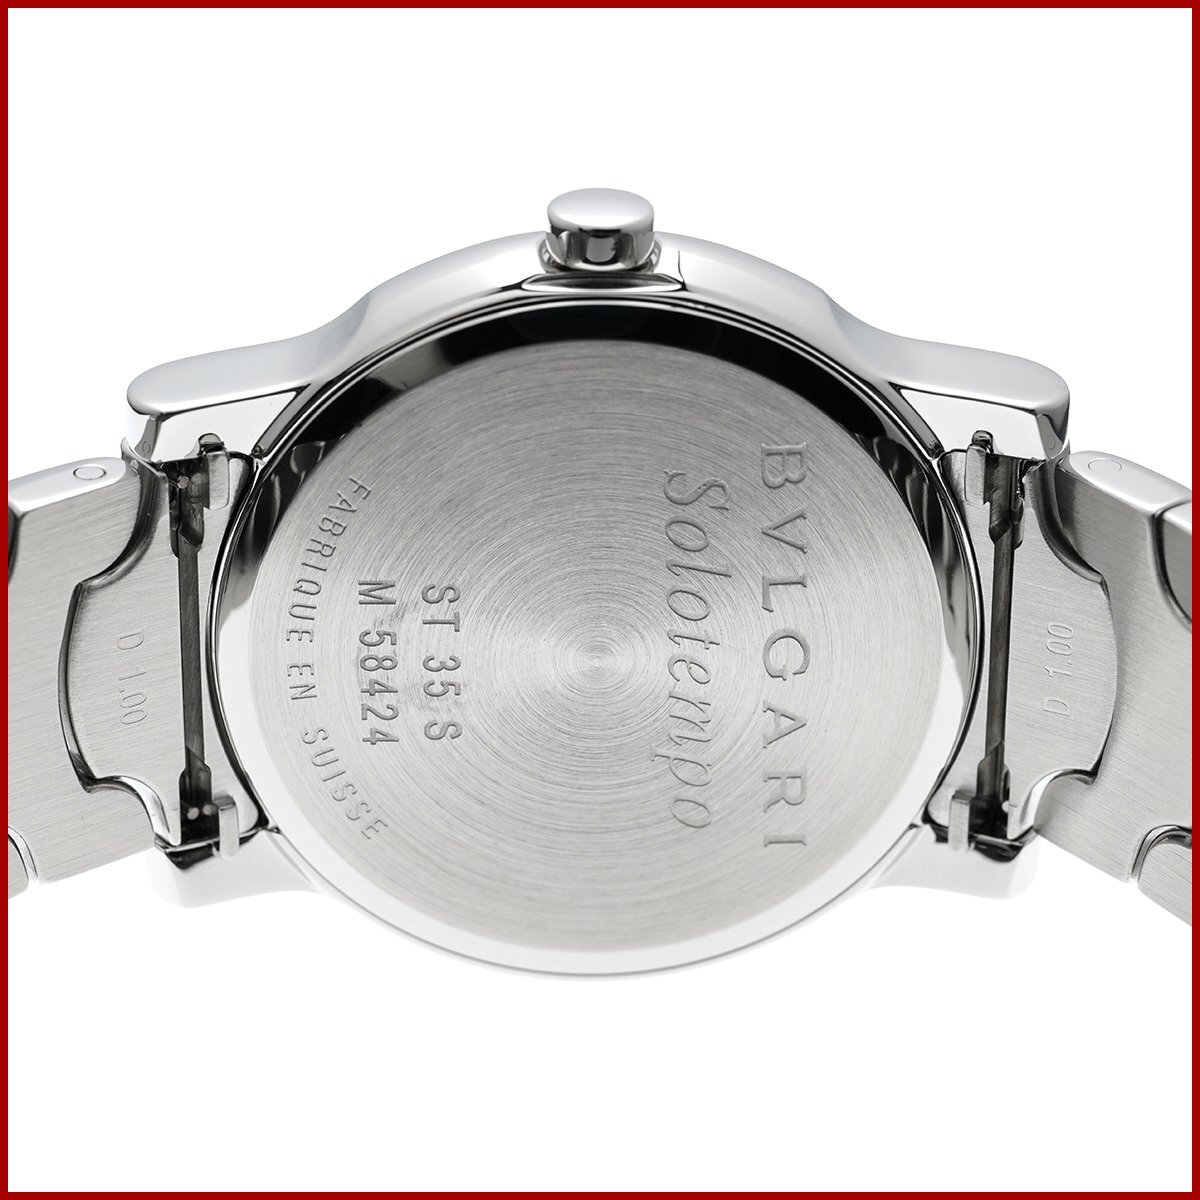 ブルガリ メンズ 腕時計 ソロテンポ ST35S SS ステンレススチール ホワイト文字盤 腕回り18cm 美品 新品仕上げ済み_画像7